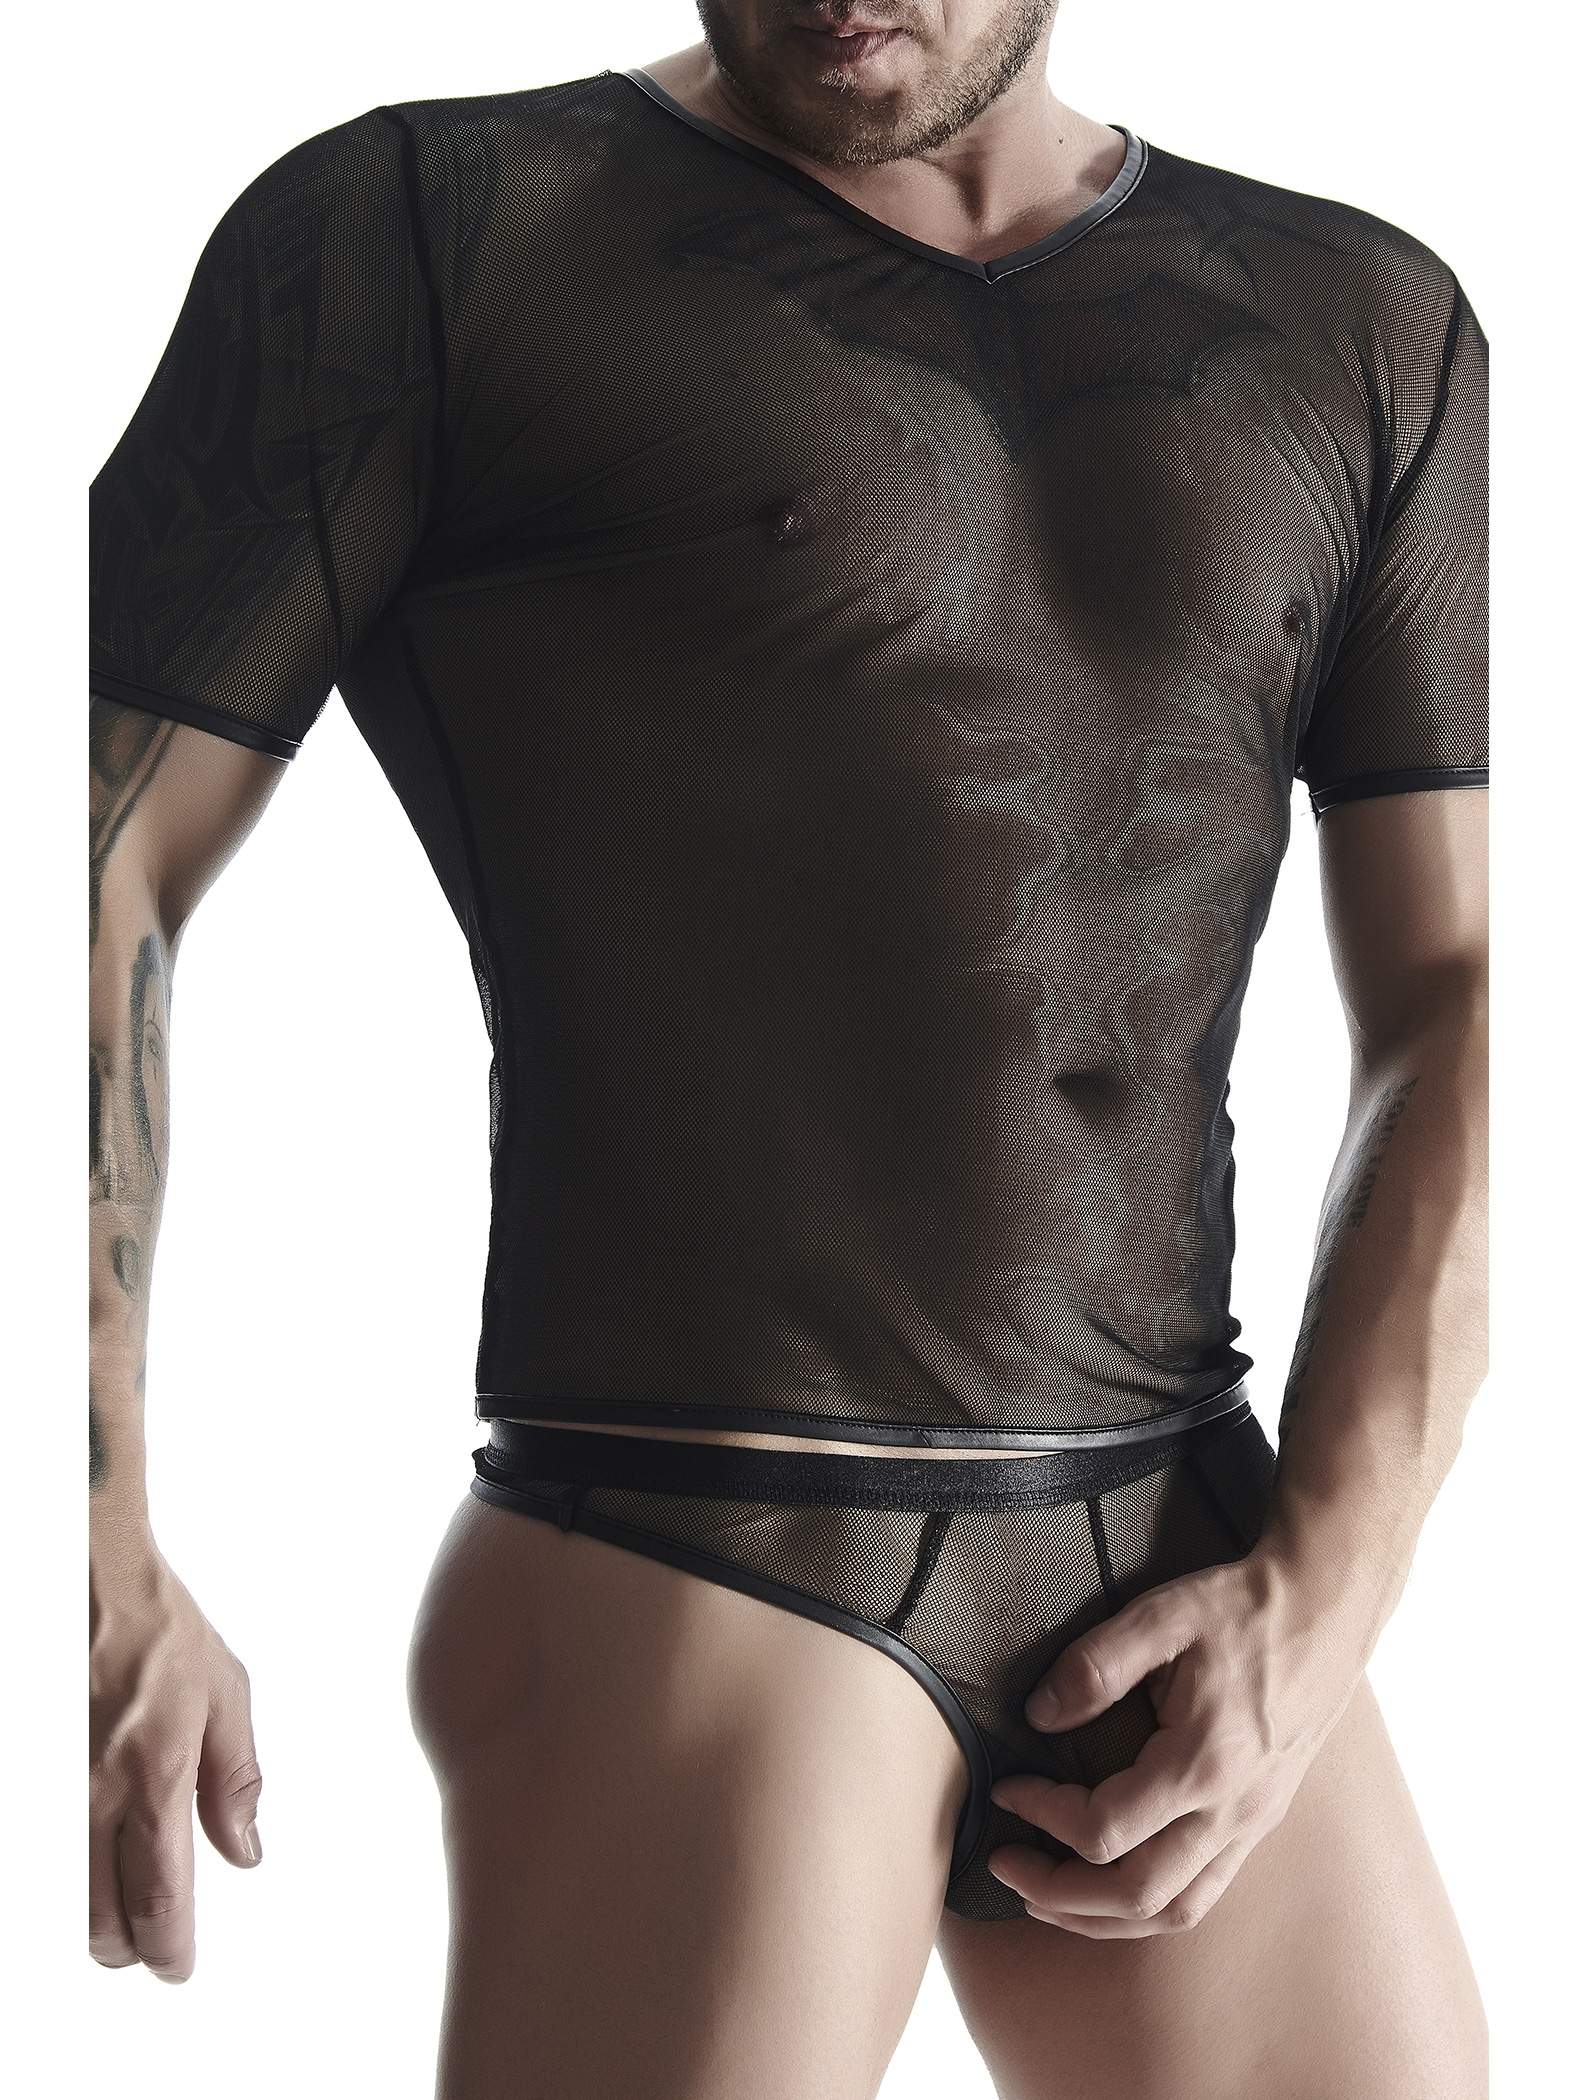 Koszulka w postaci elastycznej, prześwitującej siateczki dla mężczyzn + stringi